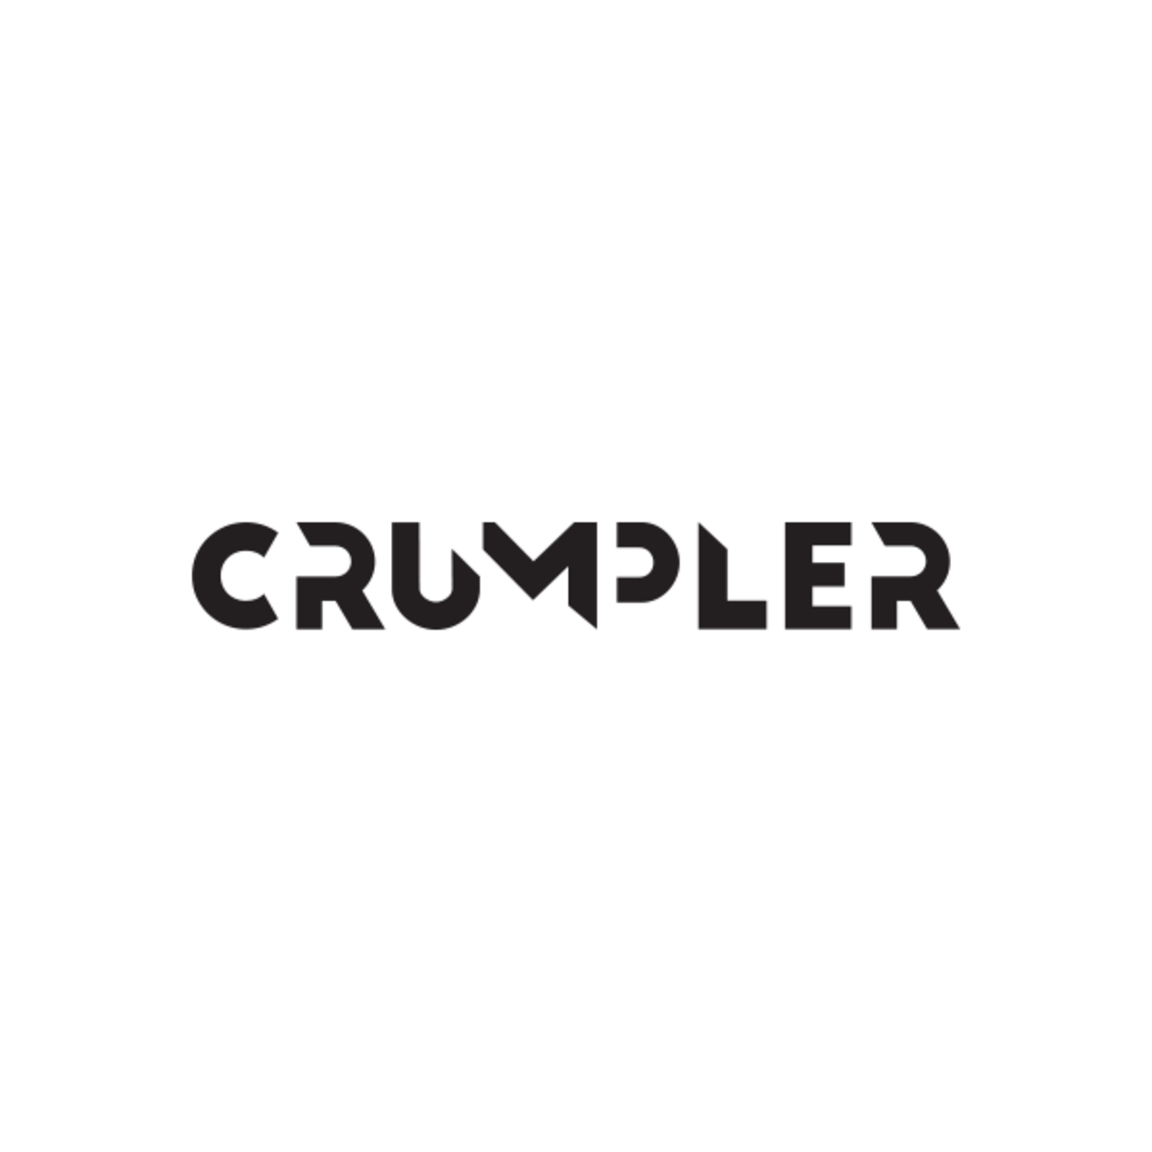 Crumpler UK